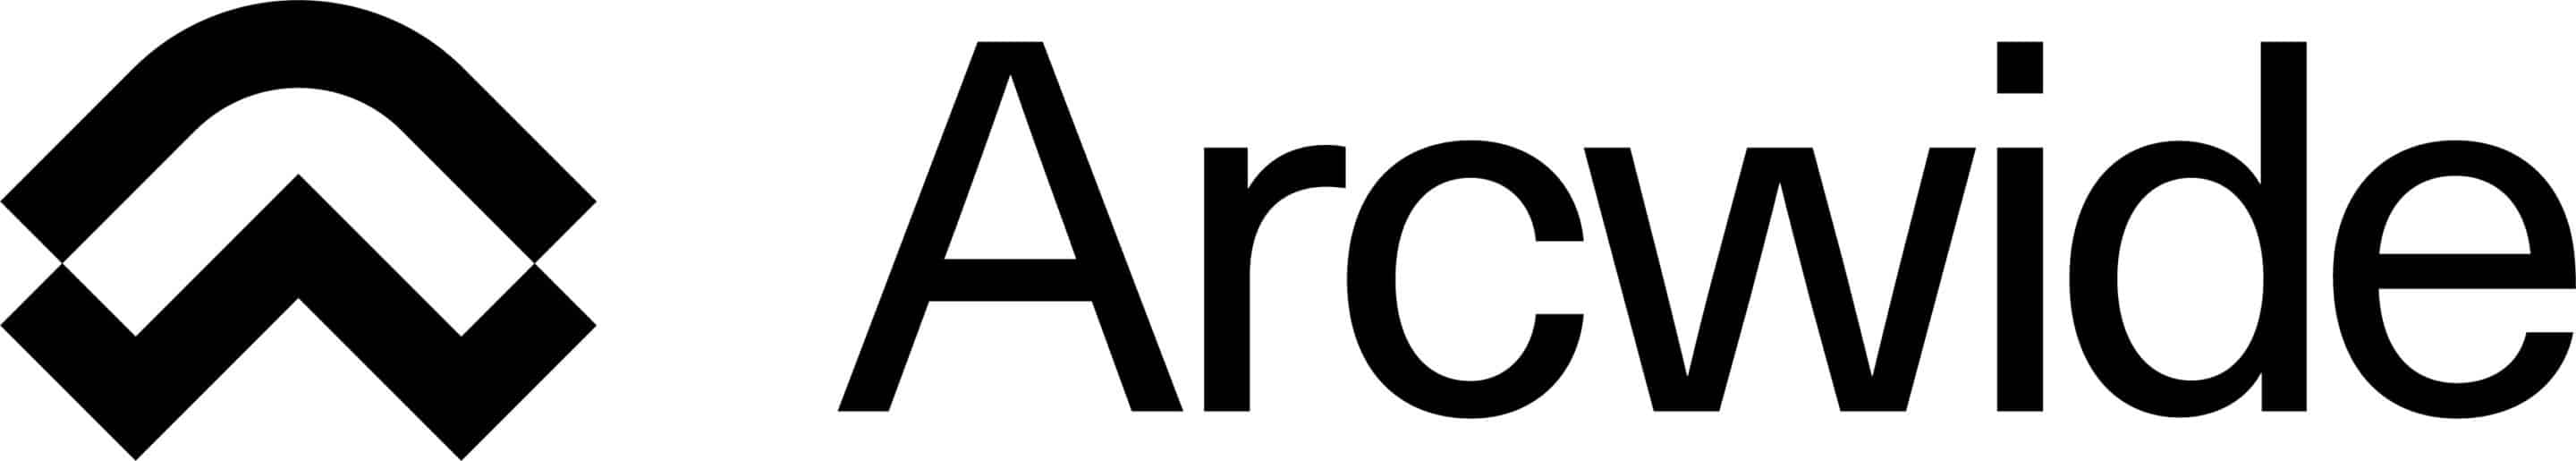 Arcwide logo